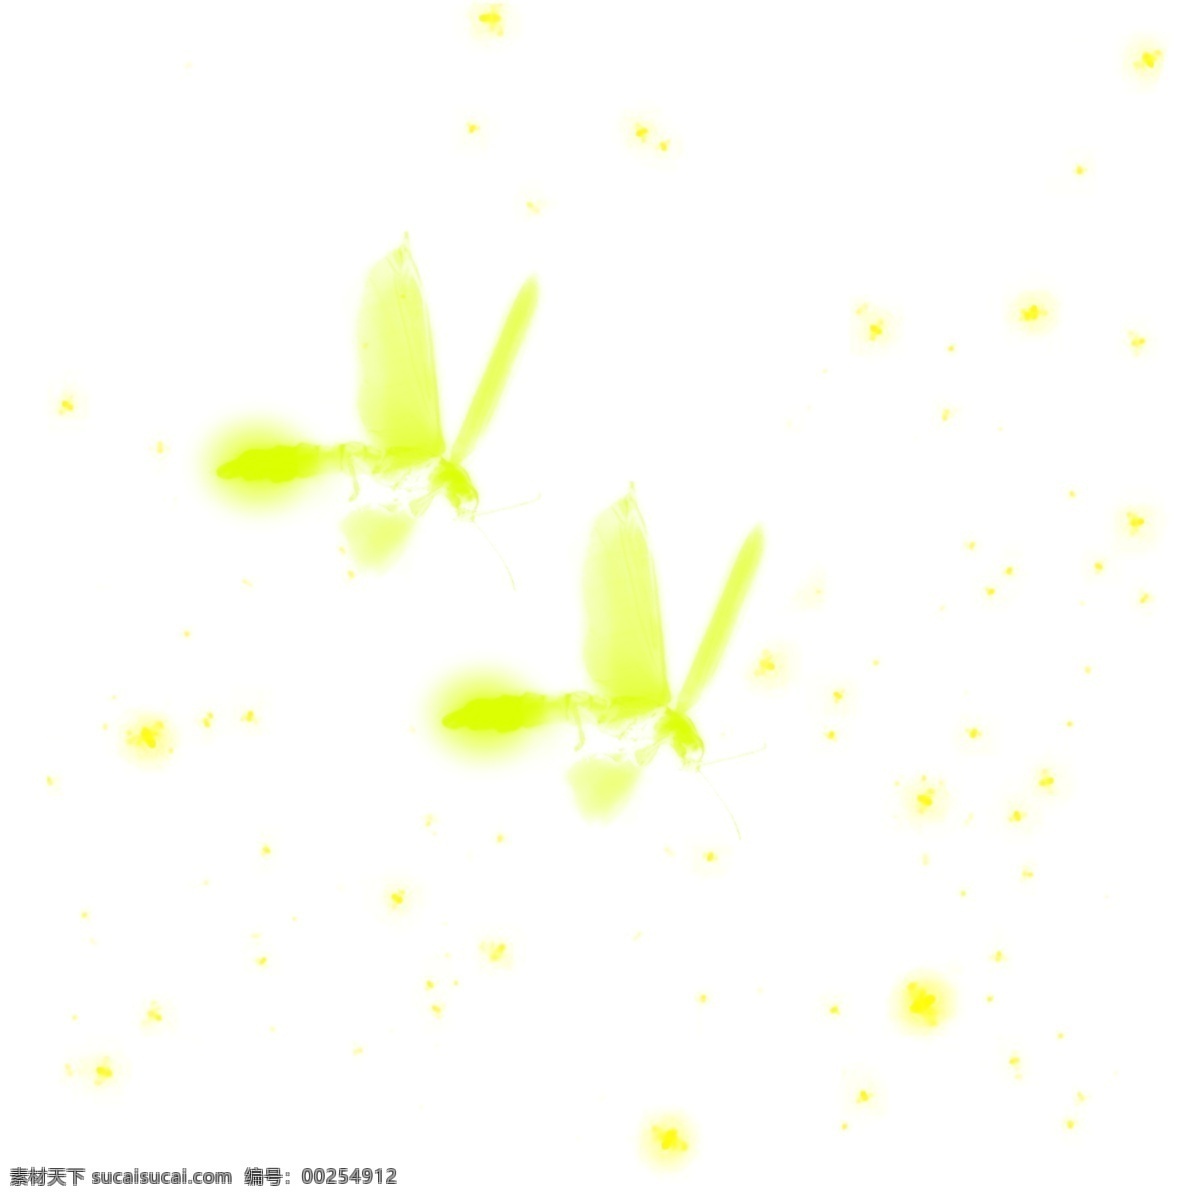 夏夜 两 只 飞舞 萤火虫 元素 飞舞的 绿色萤火虫光 小虫子 荧光 飘动的萤火虫 萤火虫发光